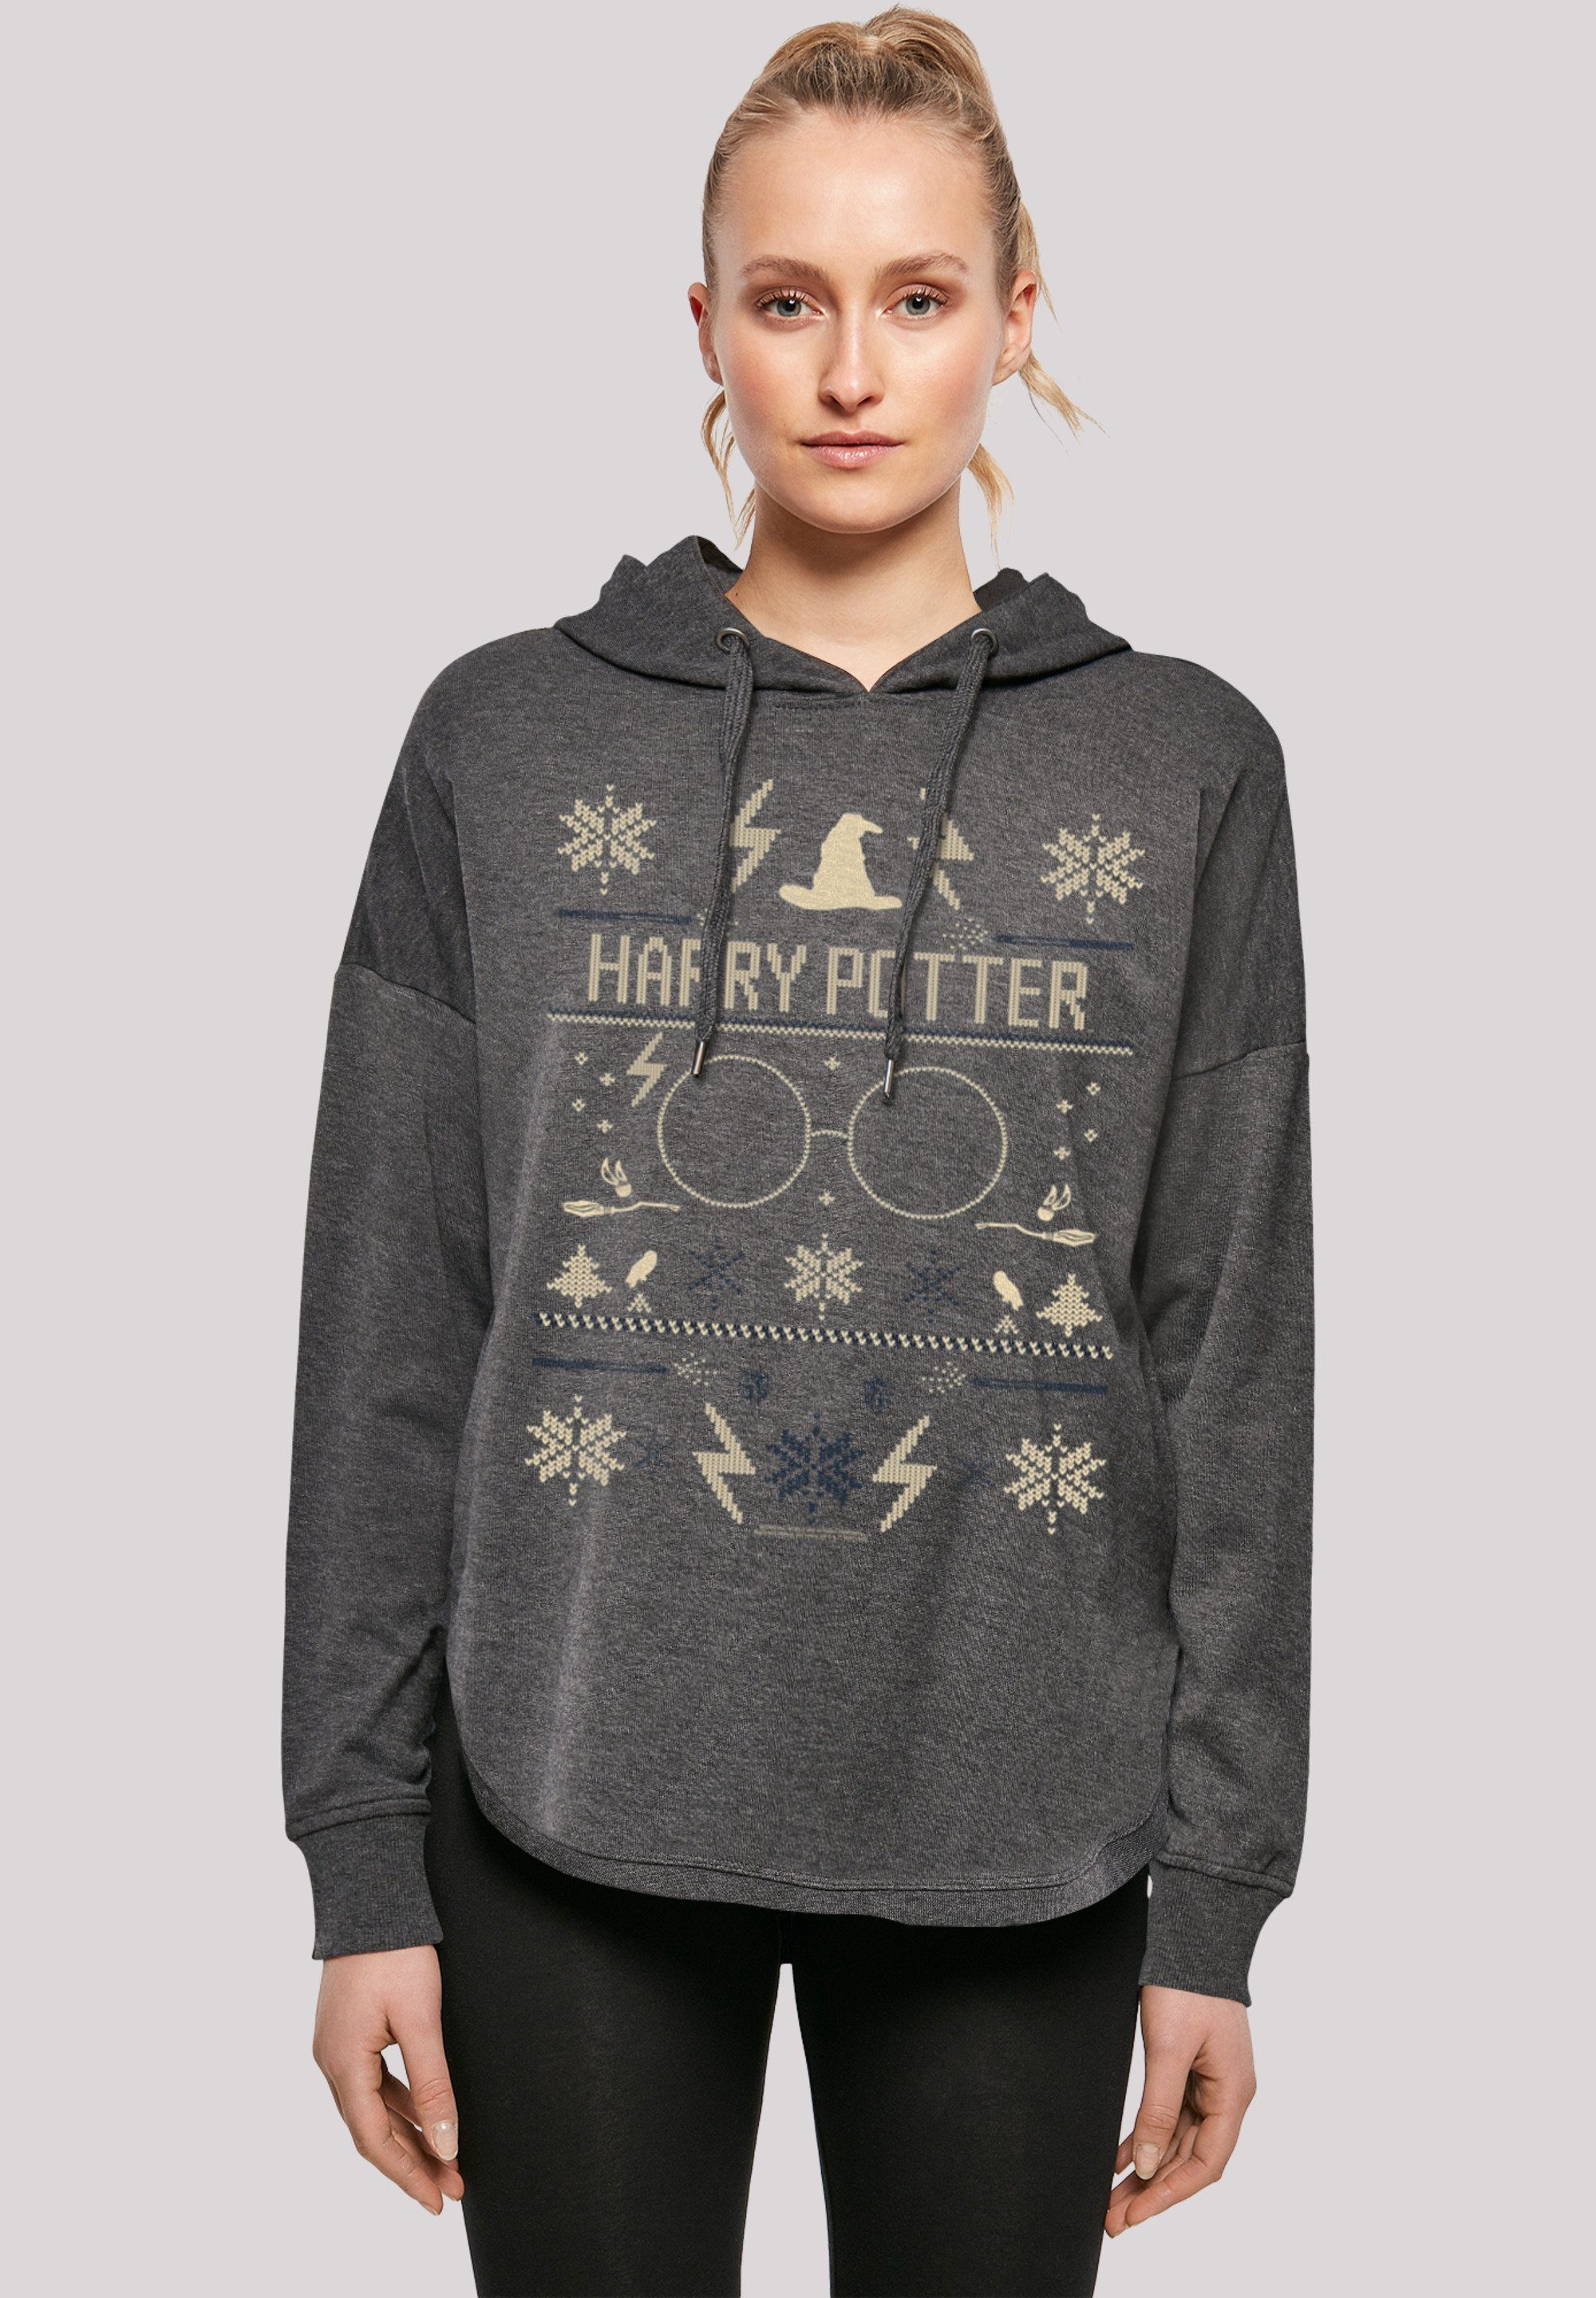 Weihnachten Christmas Potter mit Oversize sportlichem Harry F4NT4STIC Hoodie Look Print, Kapuzenpullover Gemütlicher